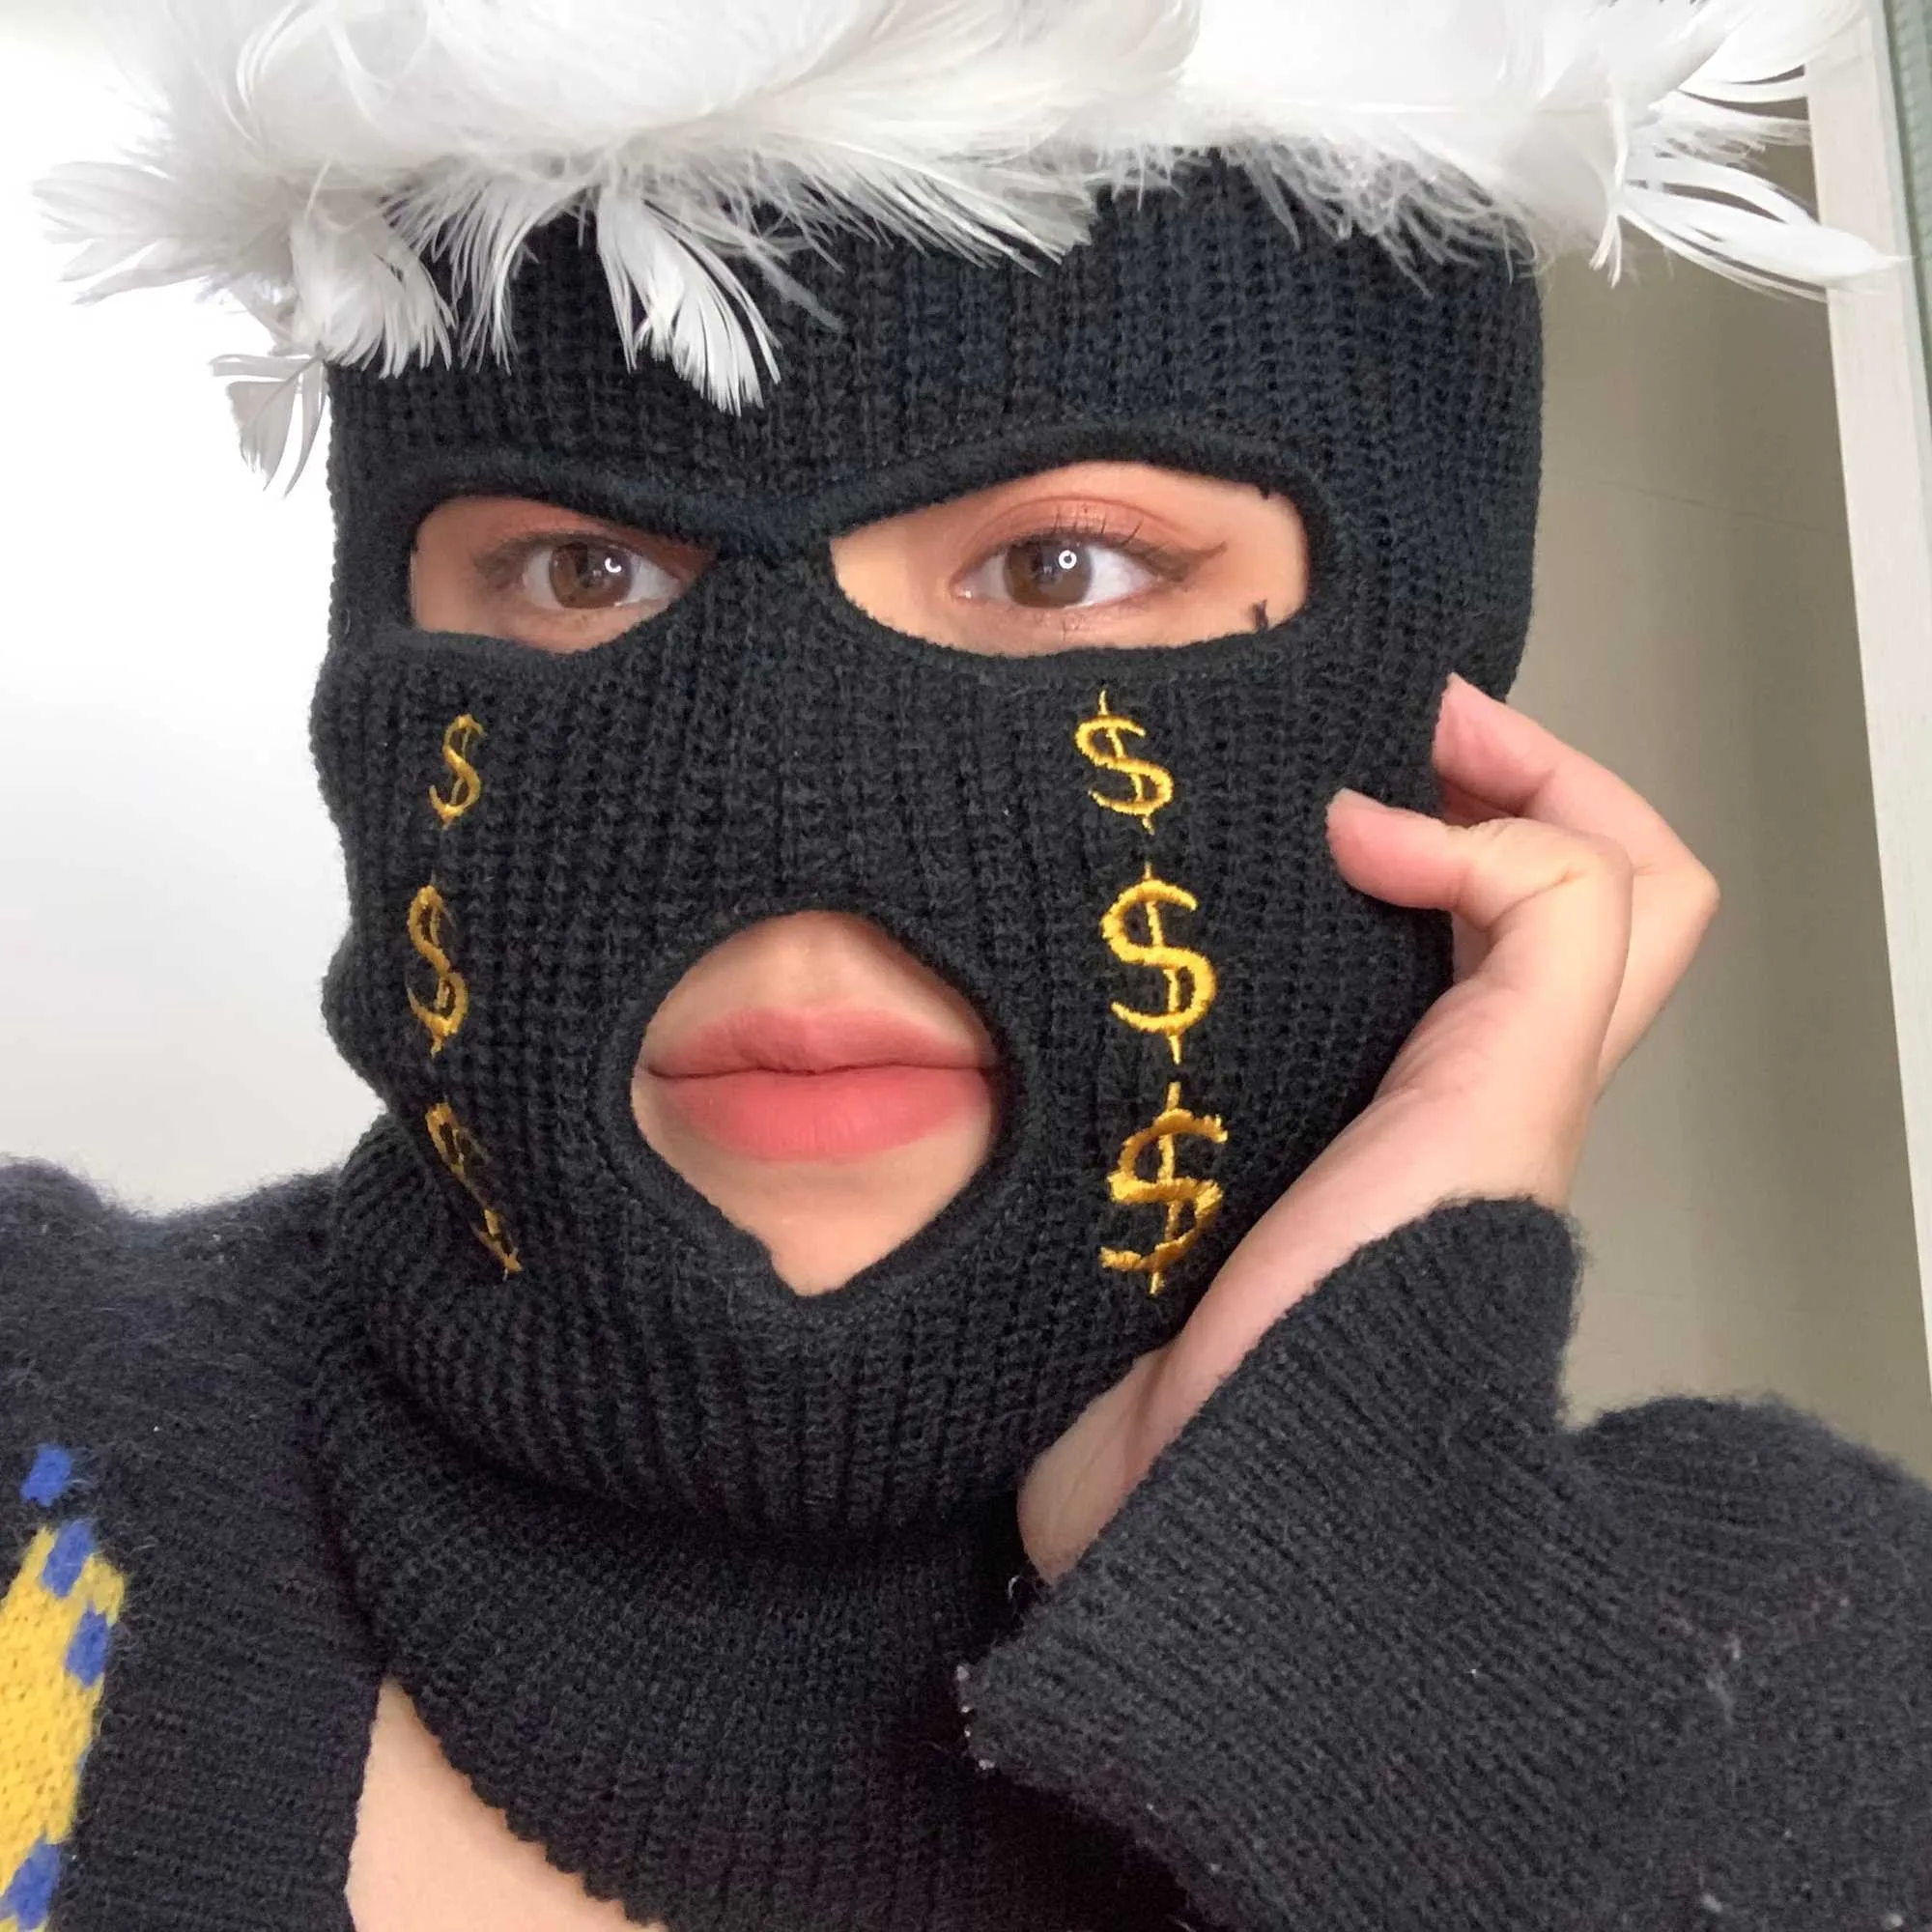 Balaclava de invierno máscara de cara completa para hombres mujeres 